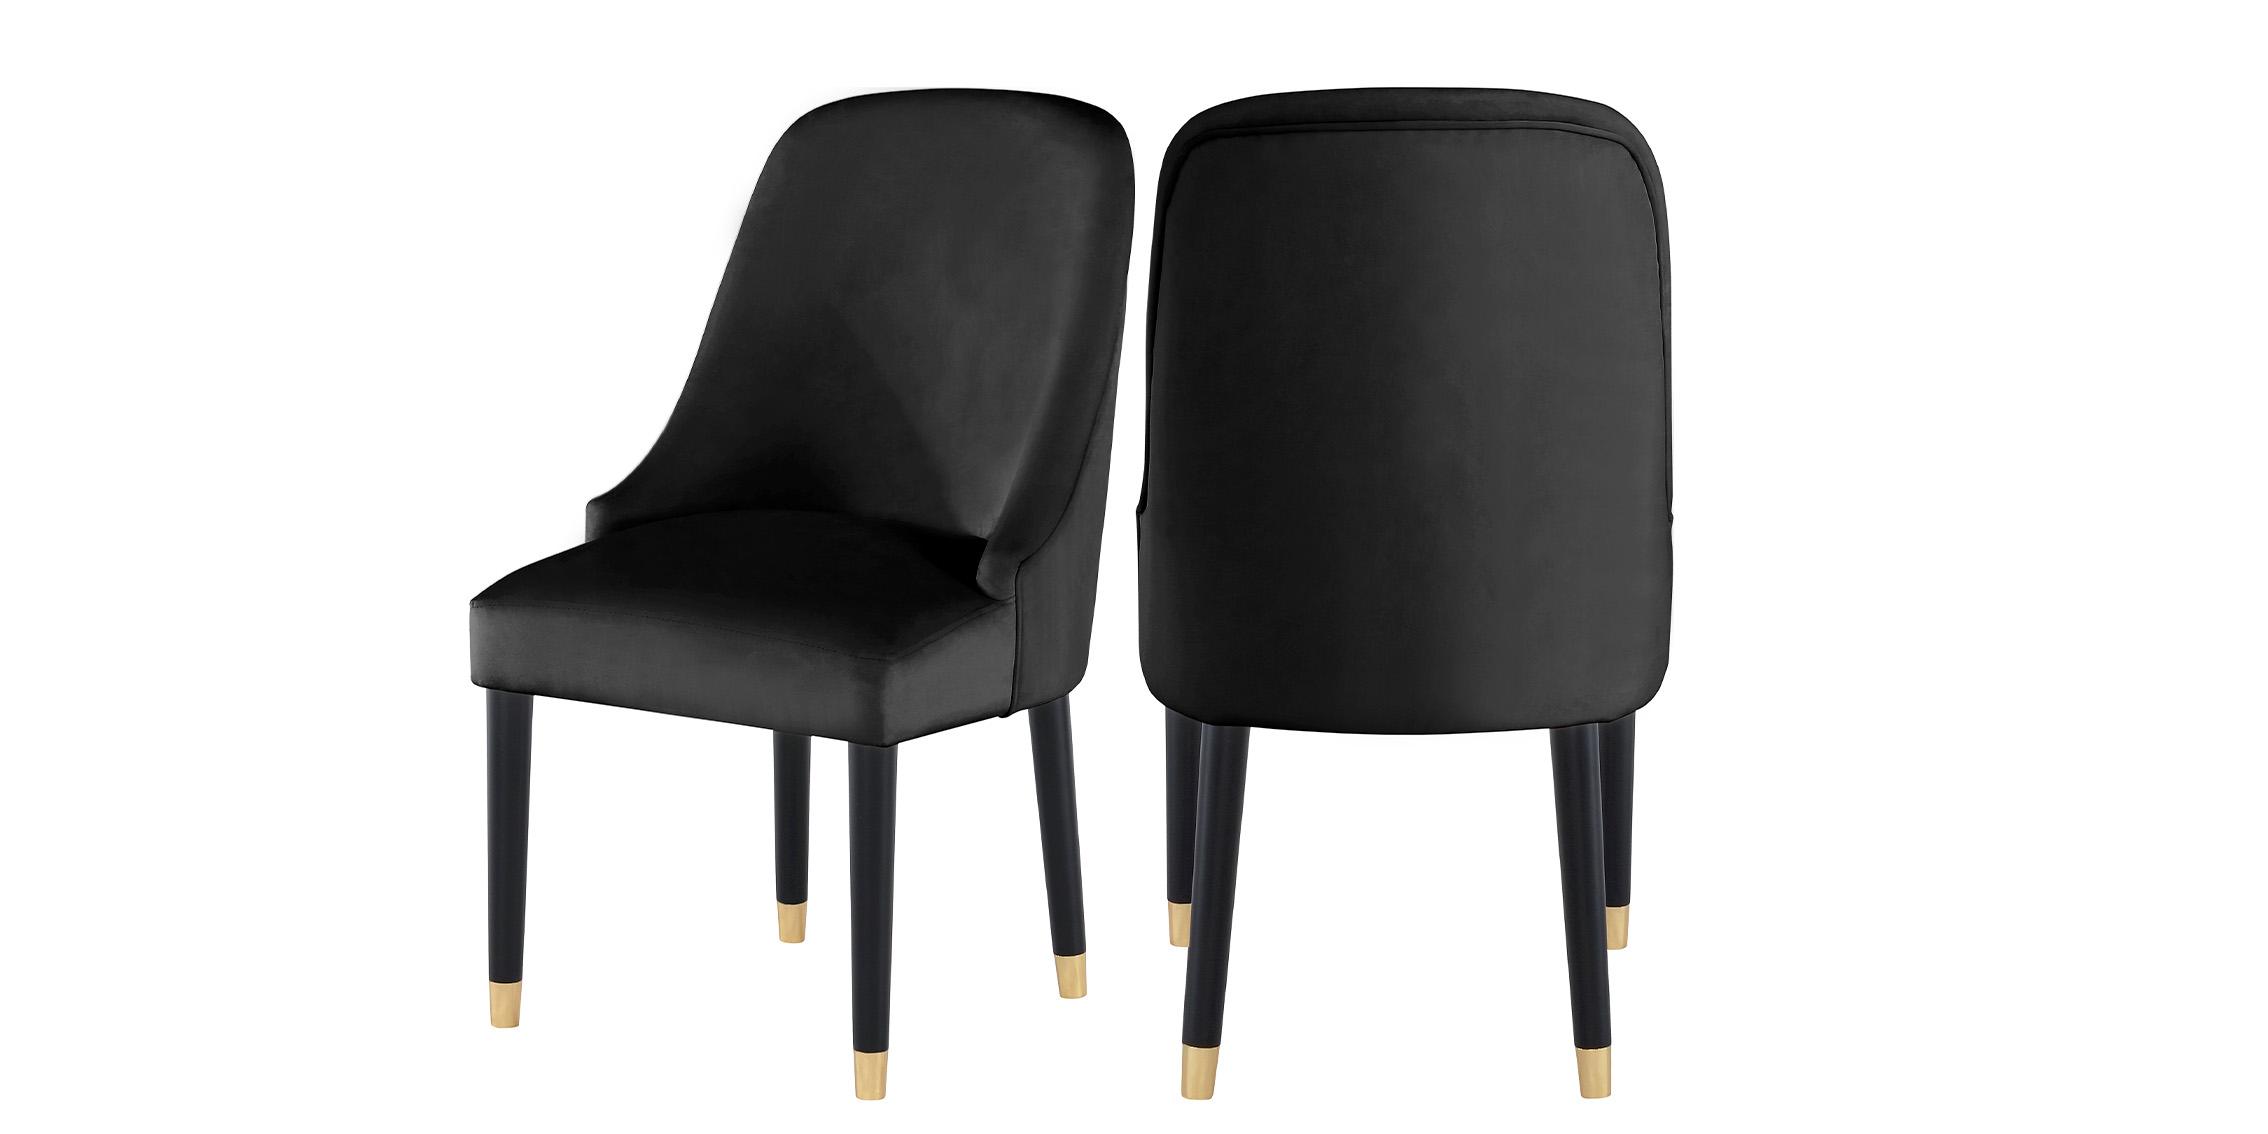 Contemporary, Modern Dining Chair Set OMNI 923Black-C 923Black-C in Black Velvet